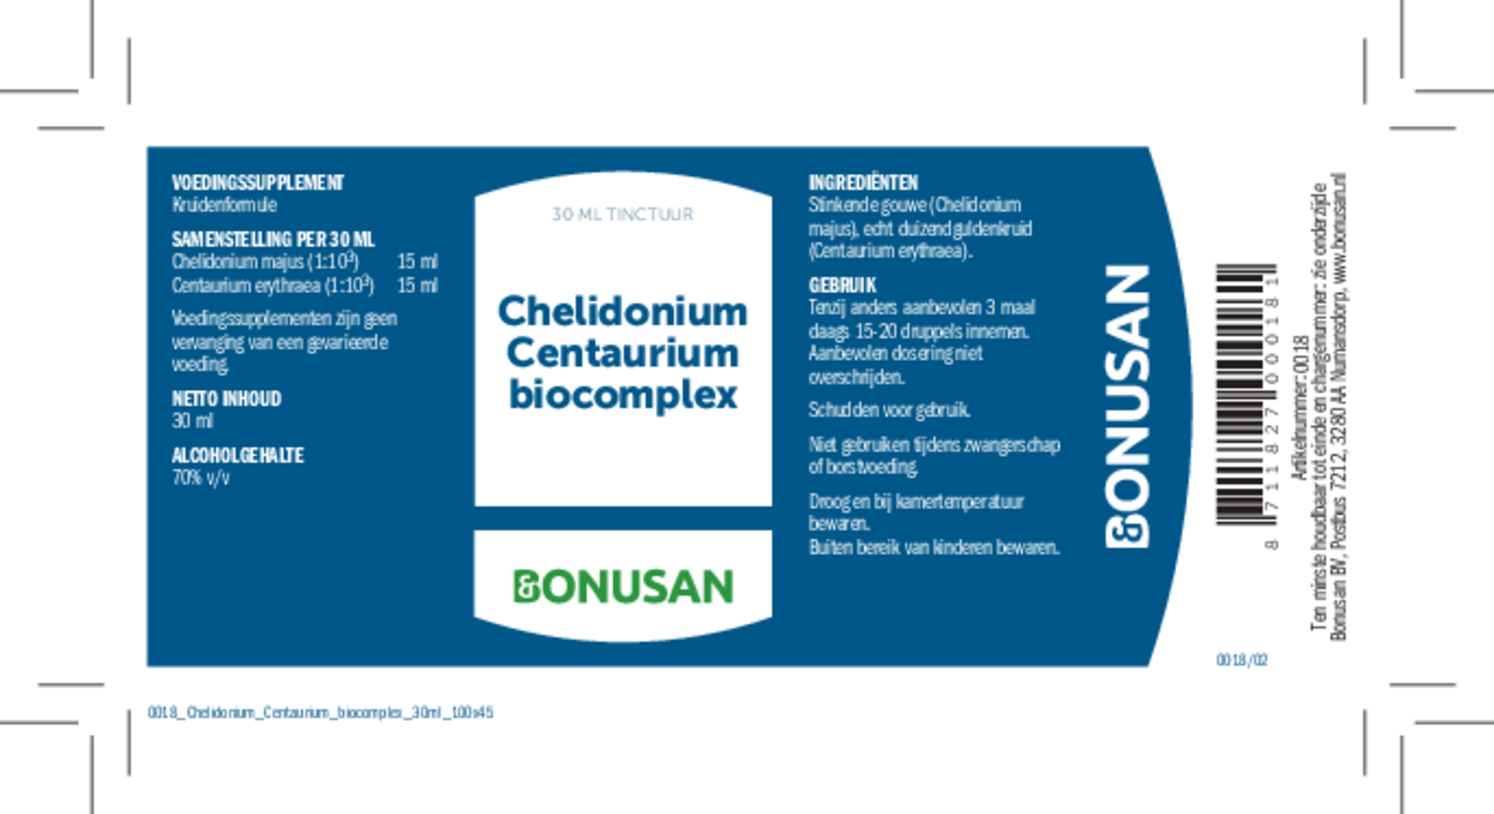 Chelidonium Centaurium Biocomplex Tinctuur afbeelding van document #1, etiket